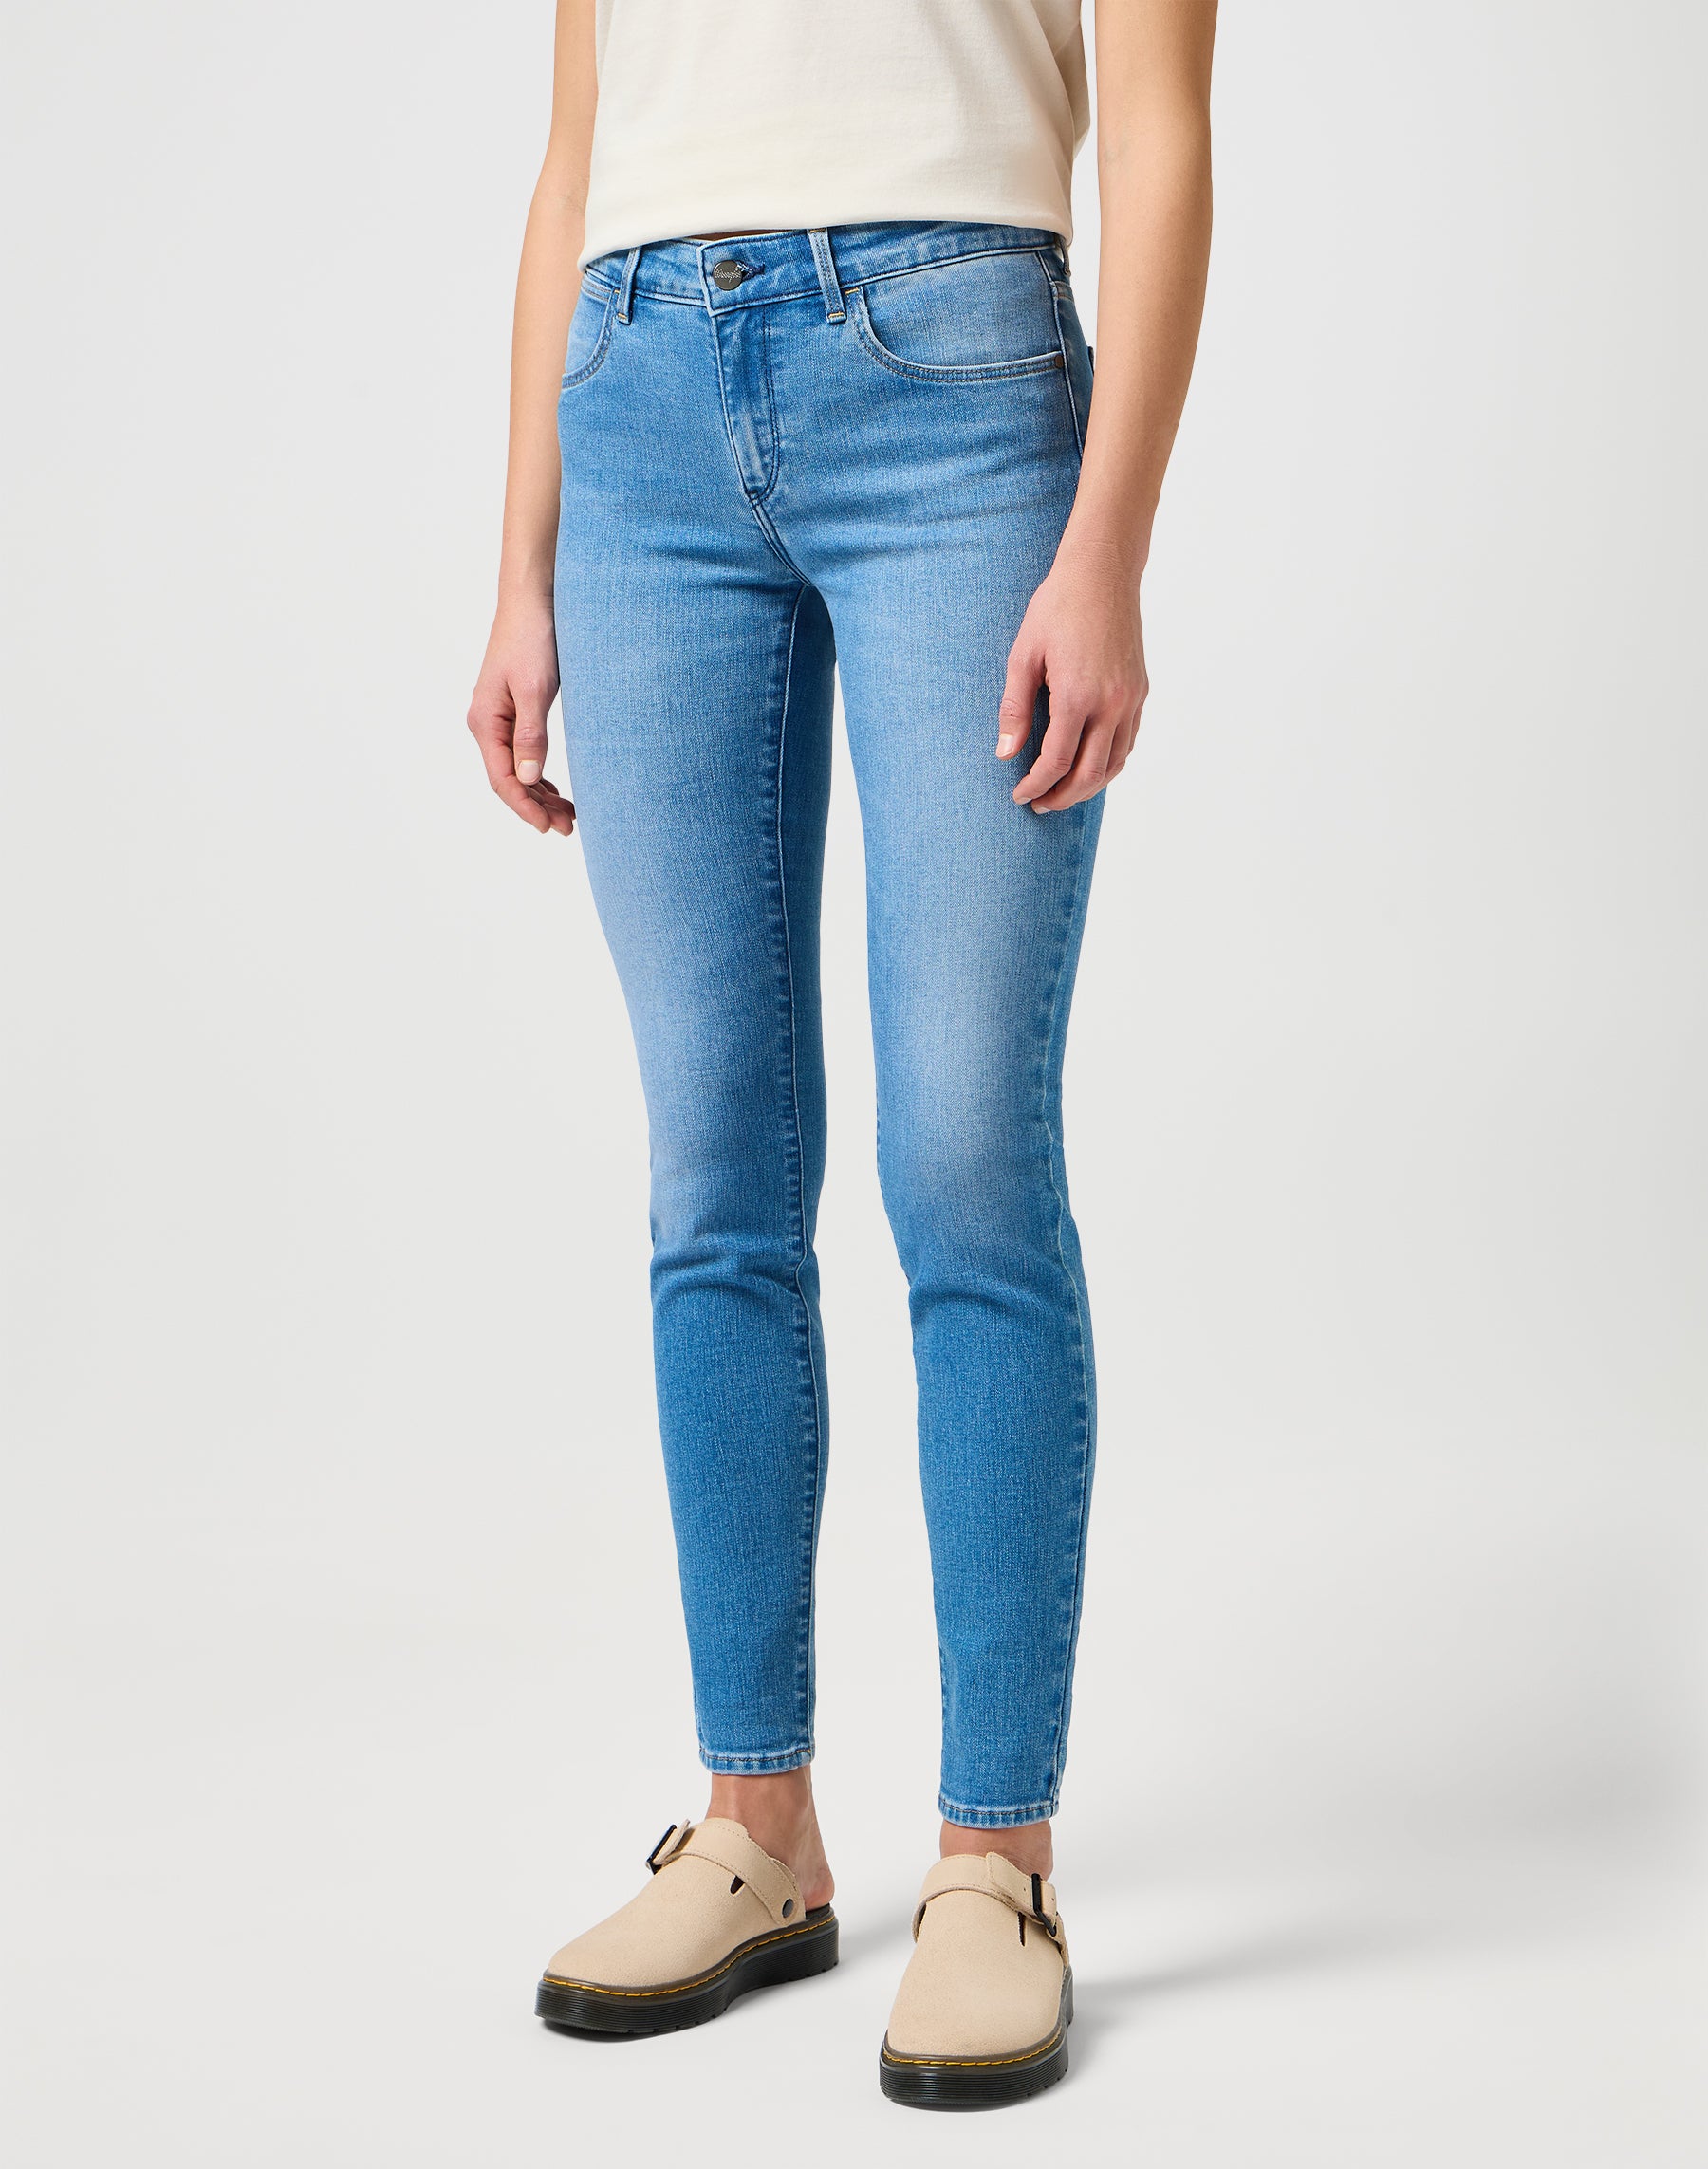 Skinny in True Enough Jeans Wrangler   